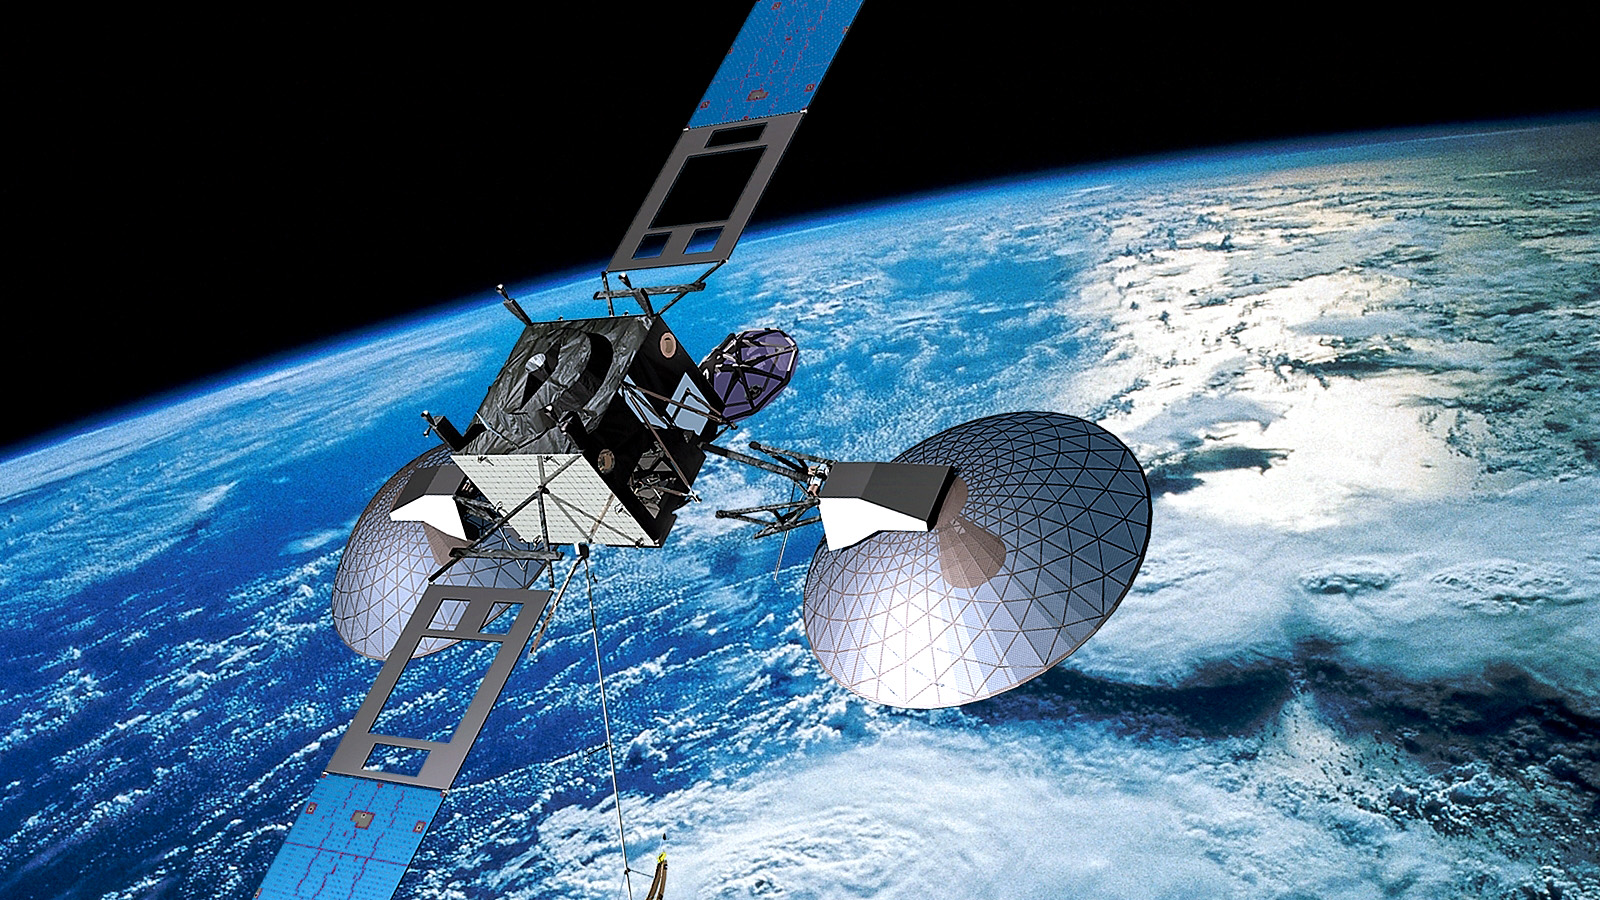 Євросоюз готує інвестувати майже €7 млрд, щоб отримати супутниковий інтернет, як у Ілона Маска